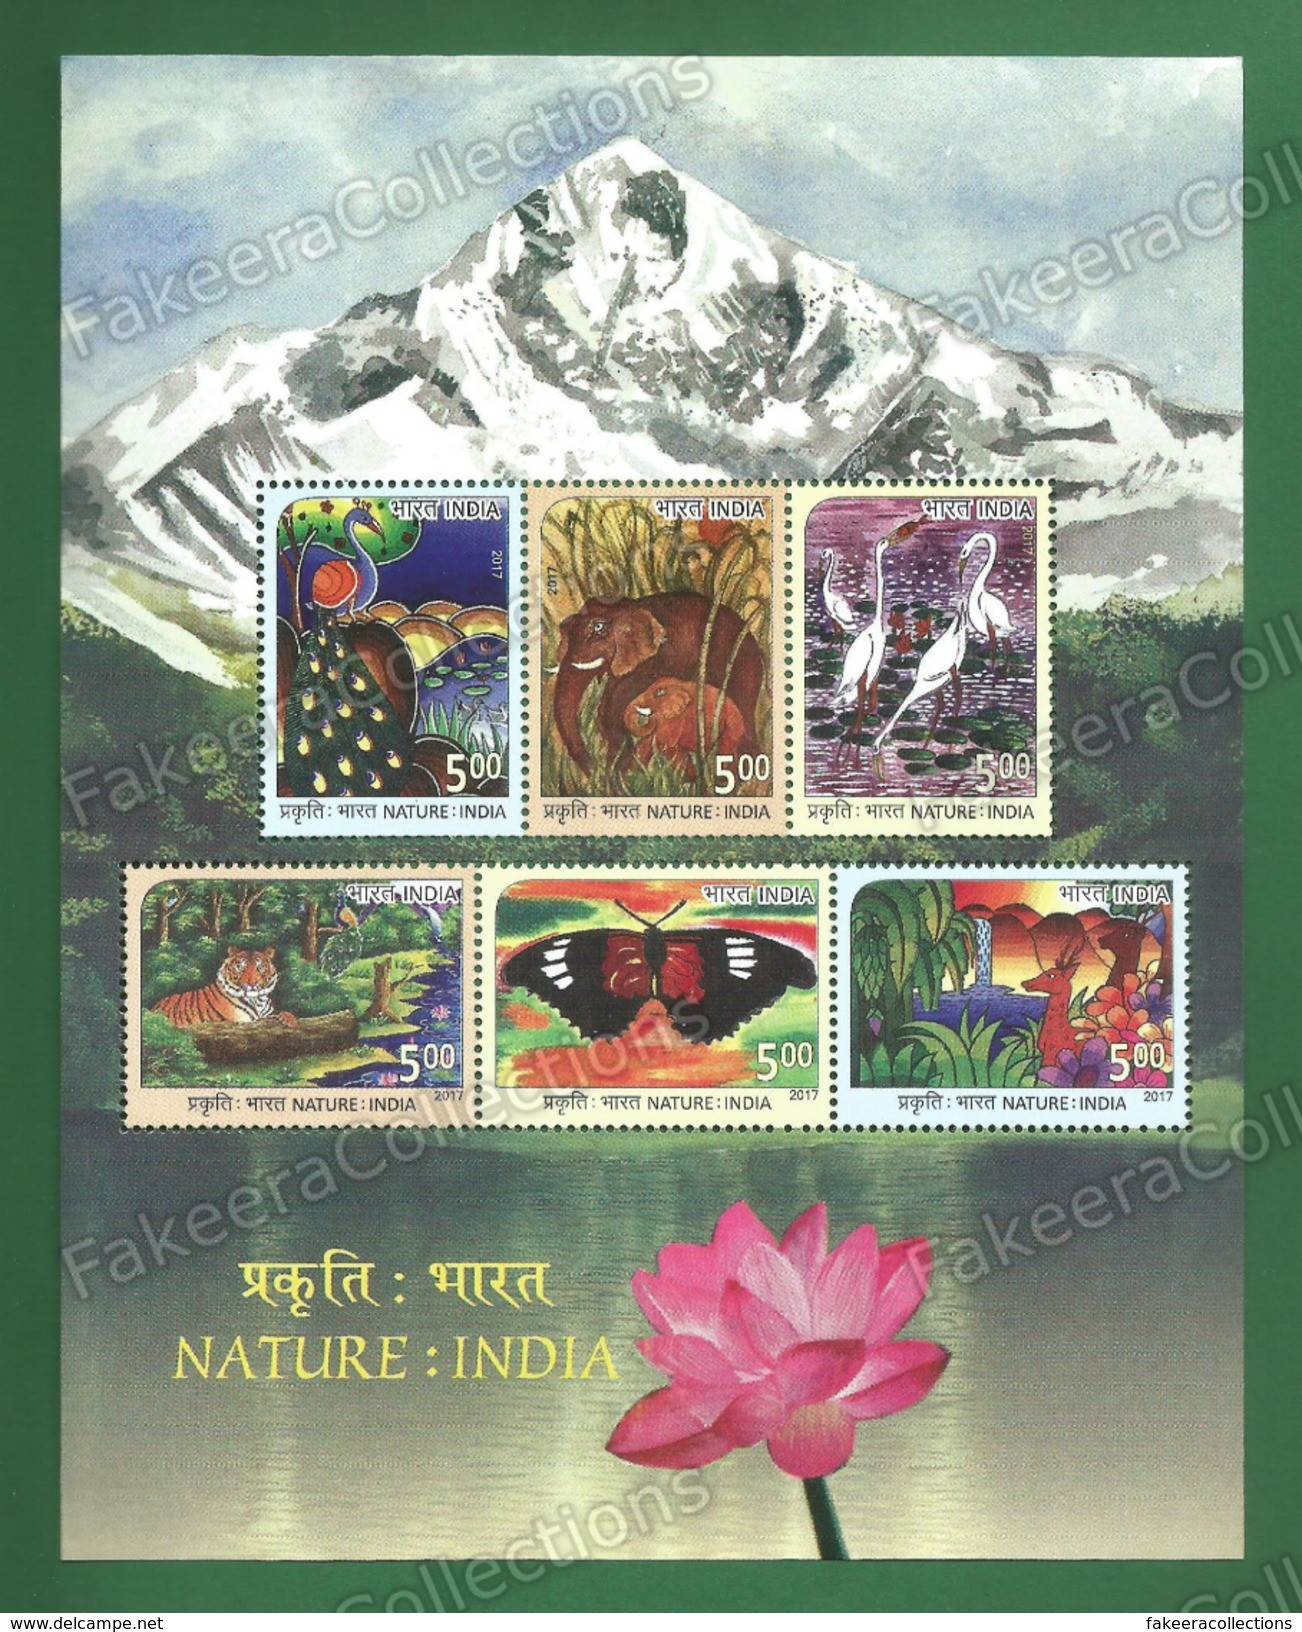 INDIA 2017 Inde Indien - NATURE - 6v Miniature Sheet MNH ** - Peacock, Elephants, Cranes, Tiger, Butterflies, Deers - Butterflies